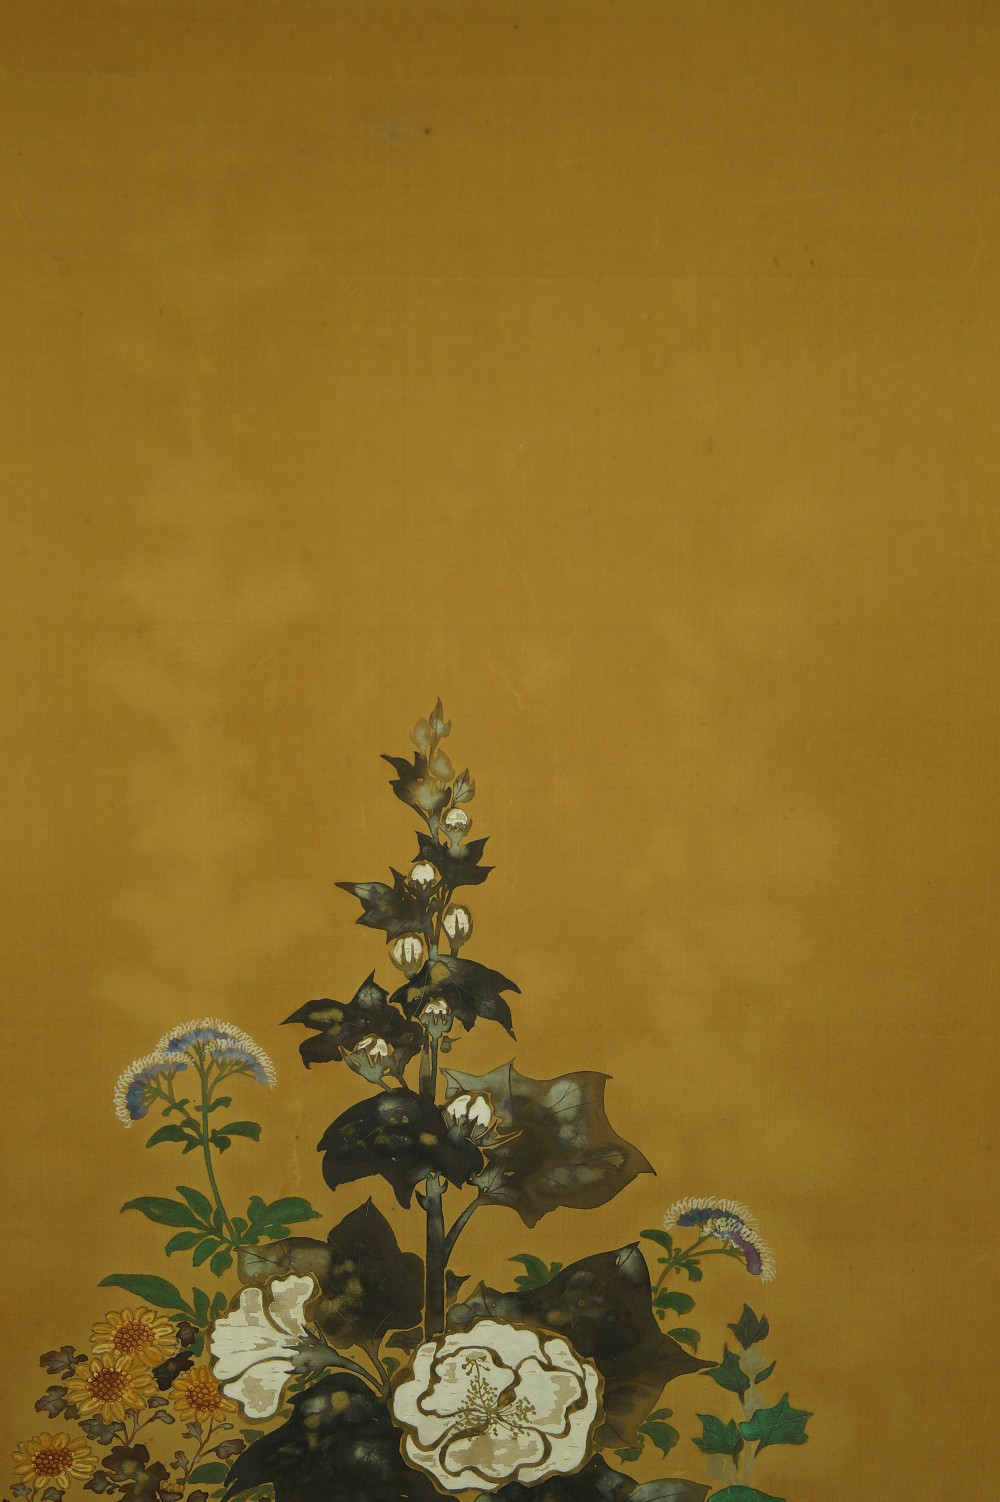 Blumen - Japanisches Rollbild (Kakejiku, Kakemono)